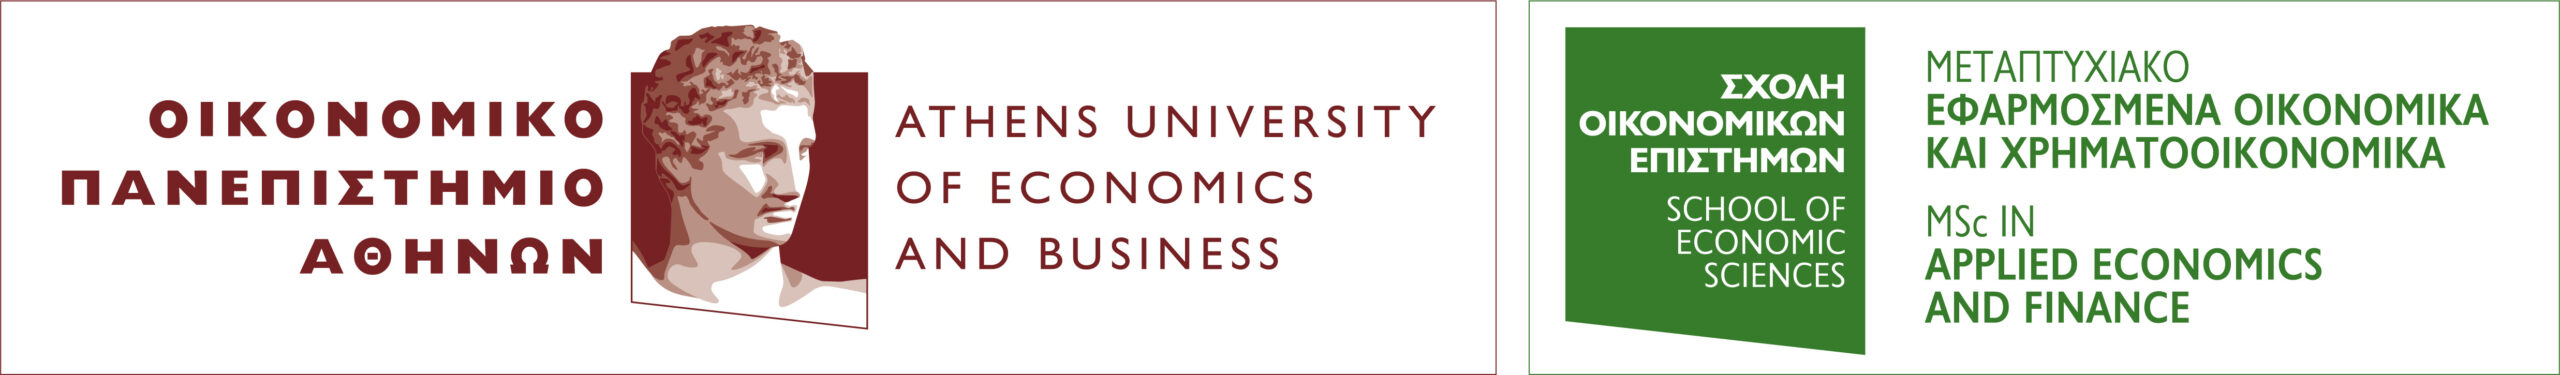 Κορυφαία Μεταπτυχιακά Προγράμματα στο Οικονομικό Πανεπιστήμιο Αθηνών